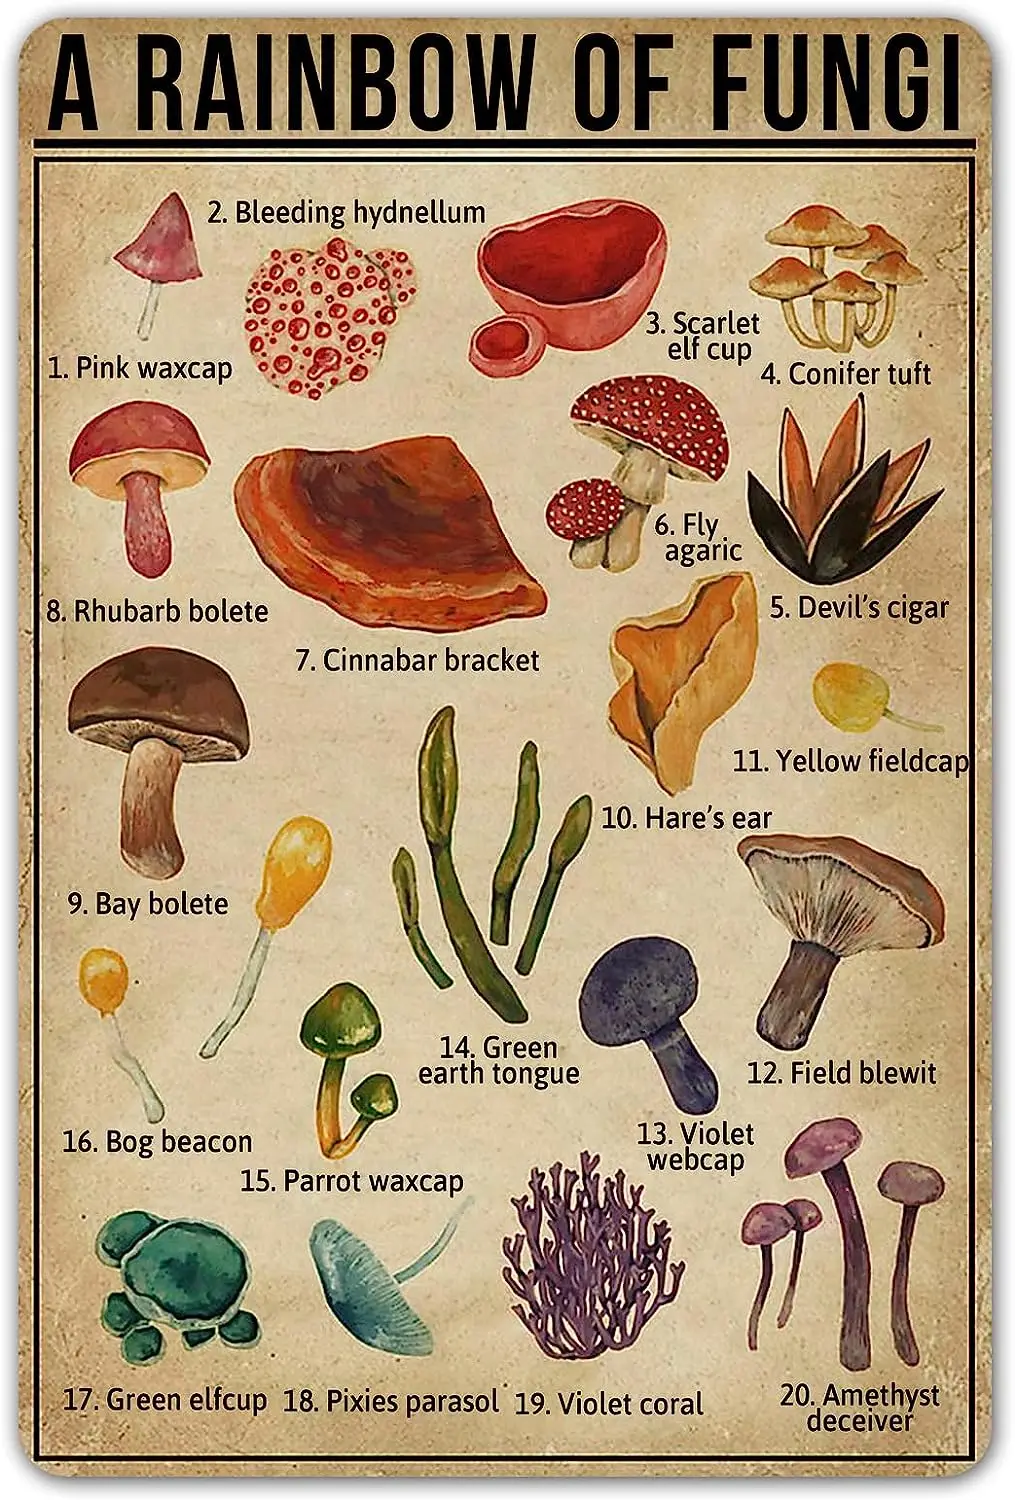 

Smartcow Радуга грибков, винтажный жестяной знак, знания о грибках, металлические знаки, природа, любимый настенный художественный плакат, Декор